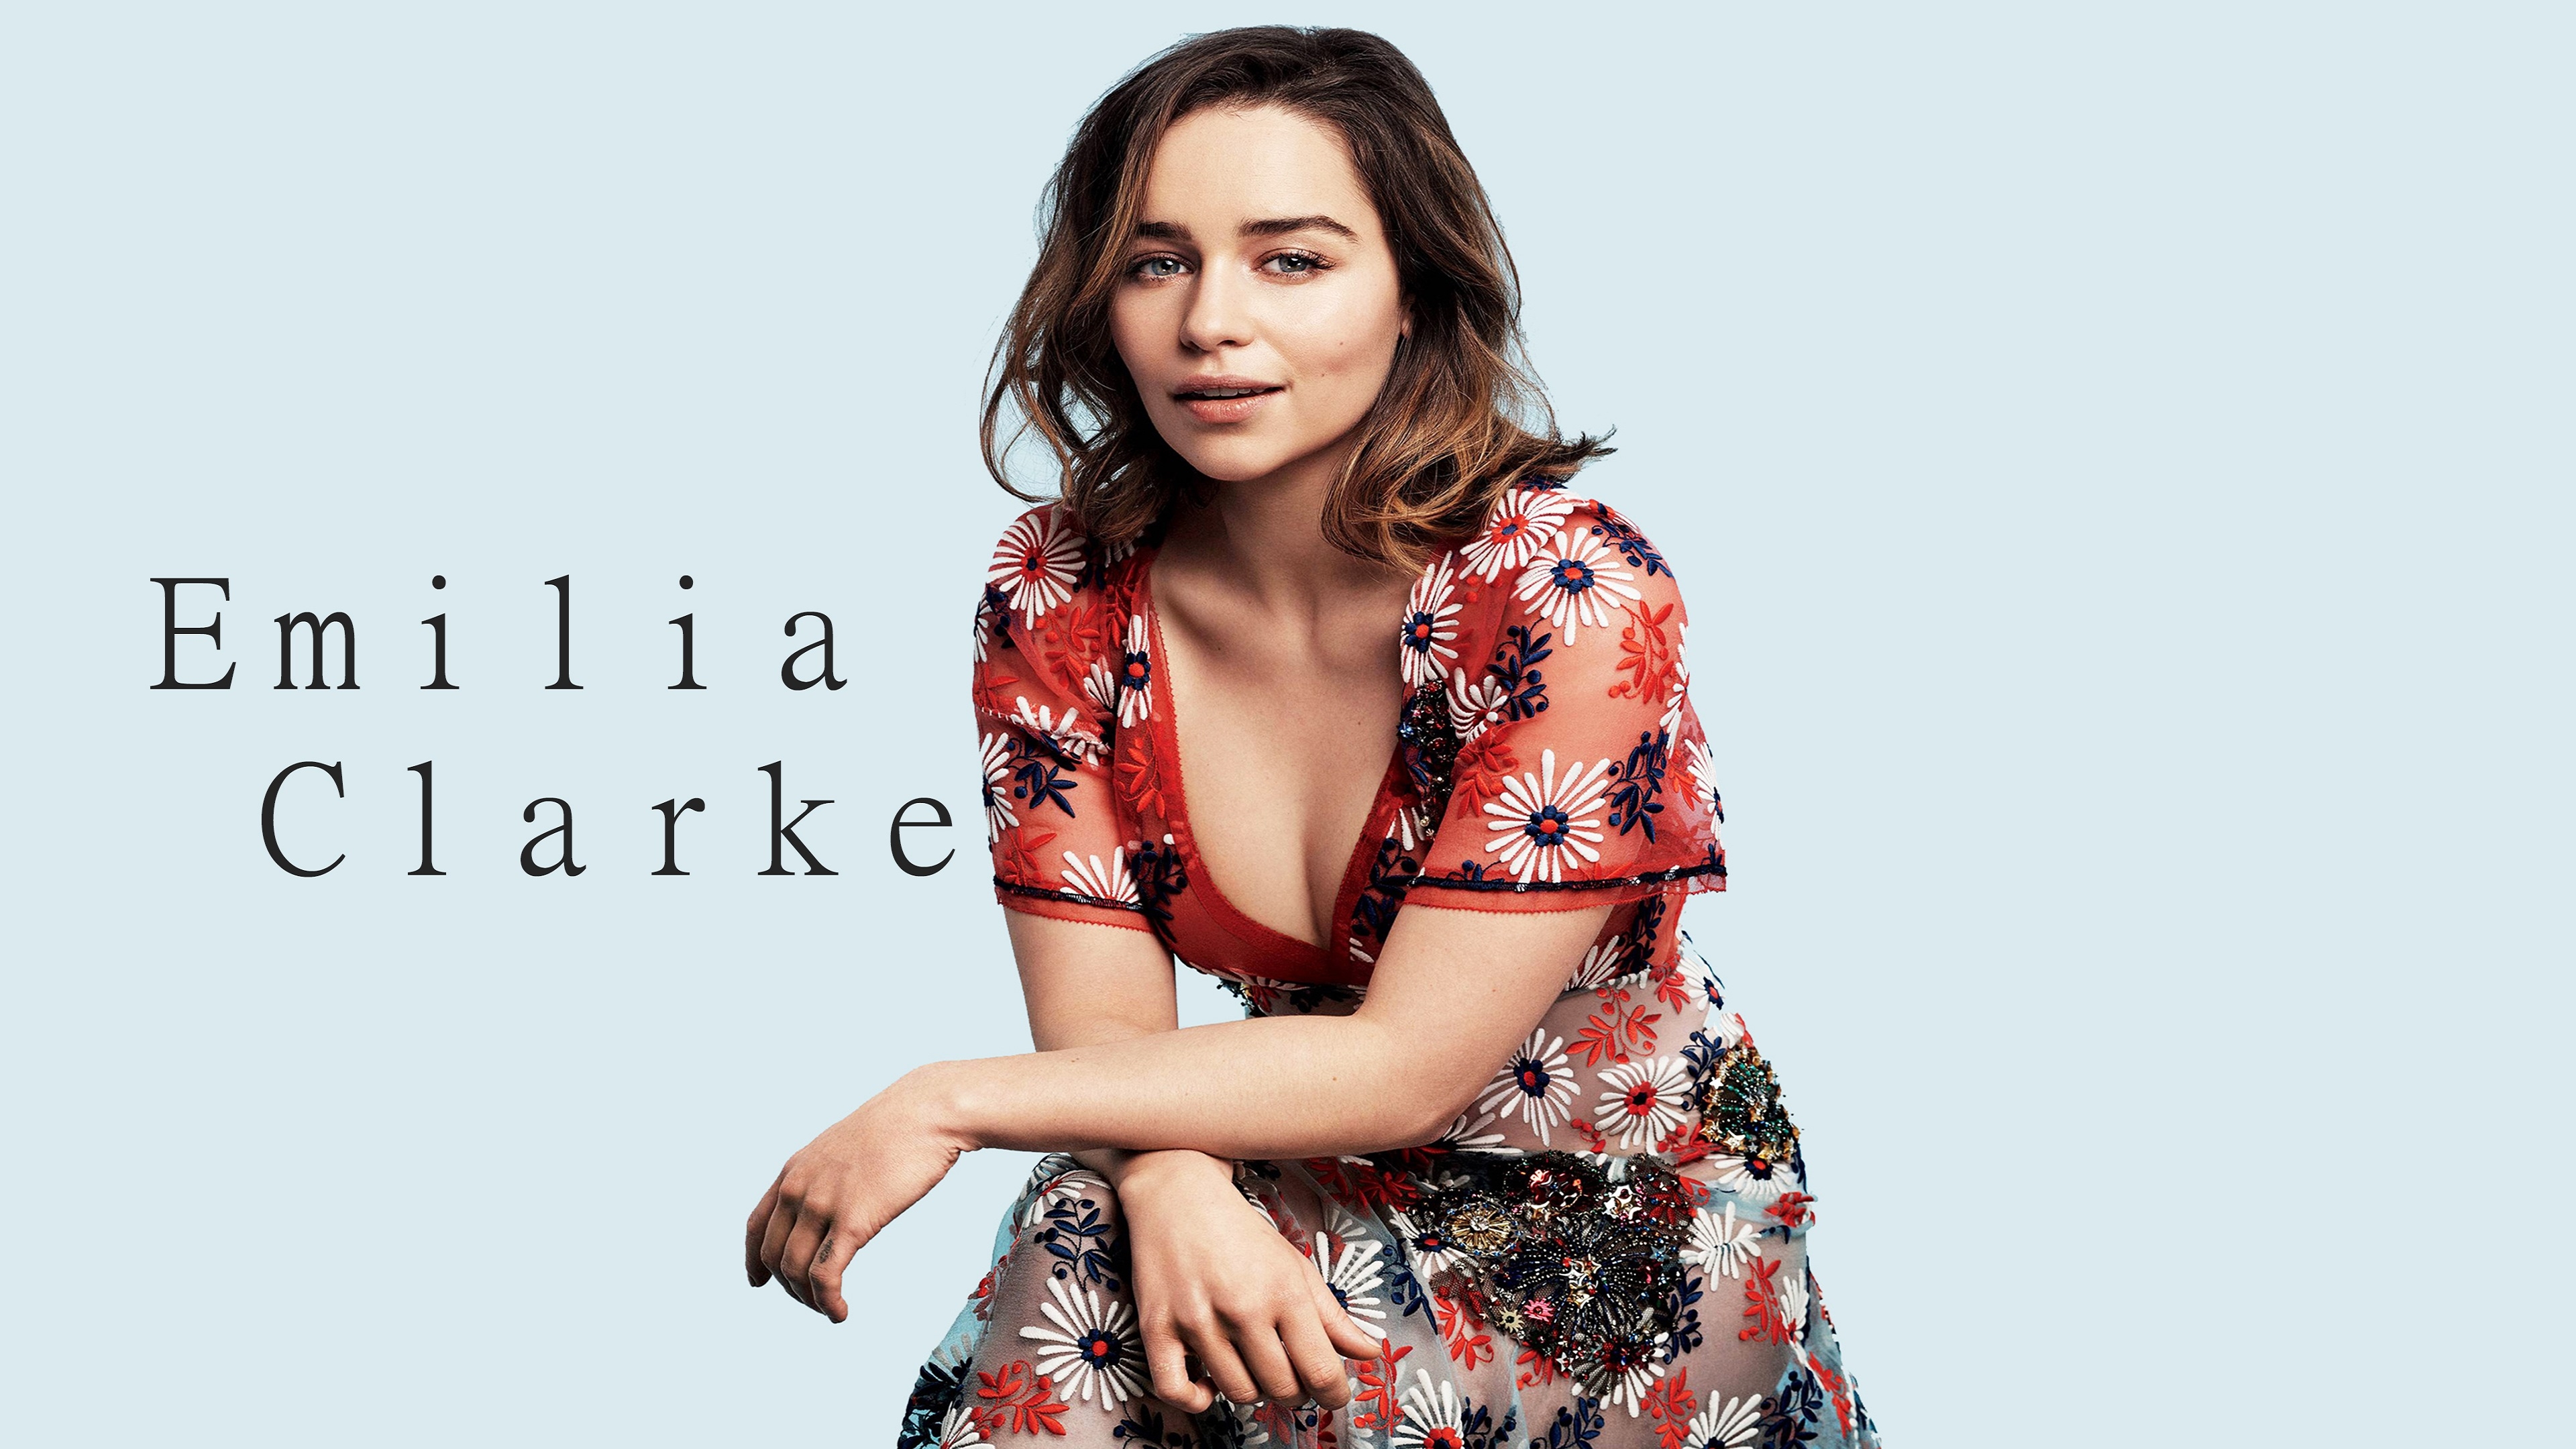 Emilia Clarke 2017 for 3840 x 2160 4K Ultra HDTV resolution